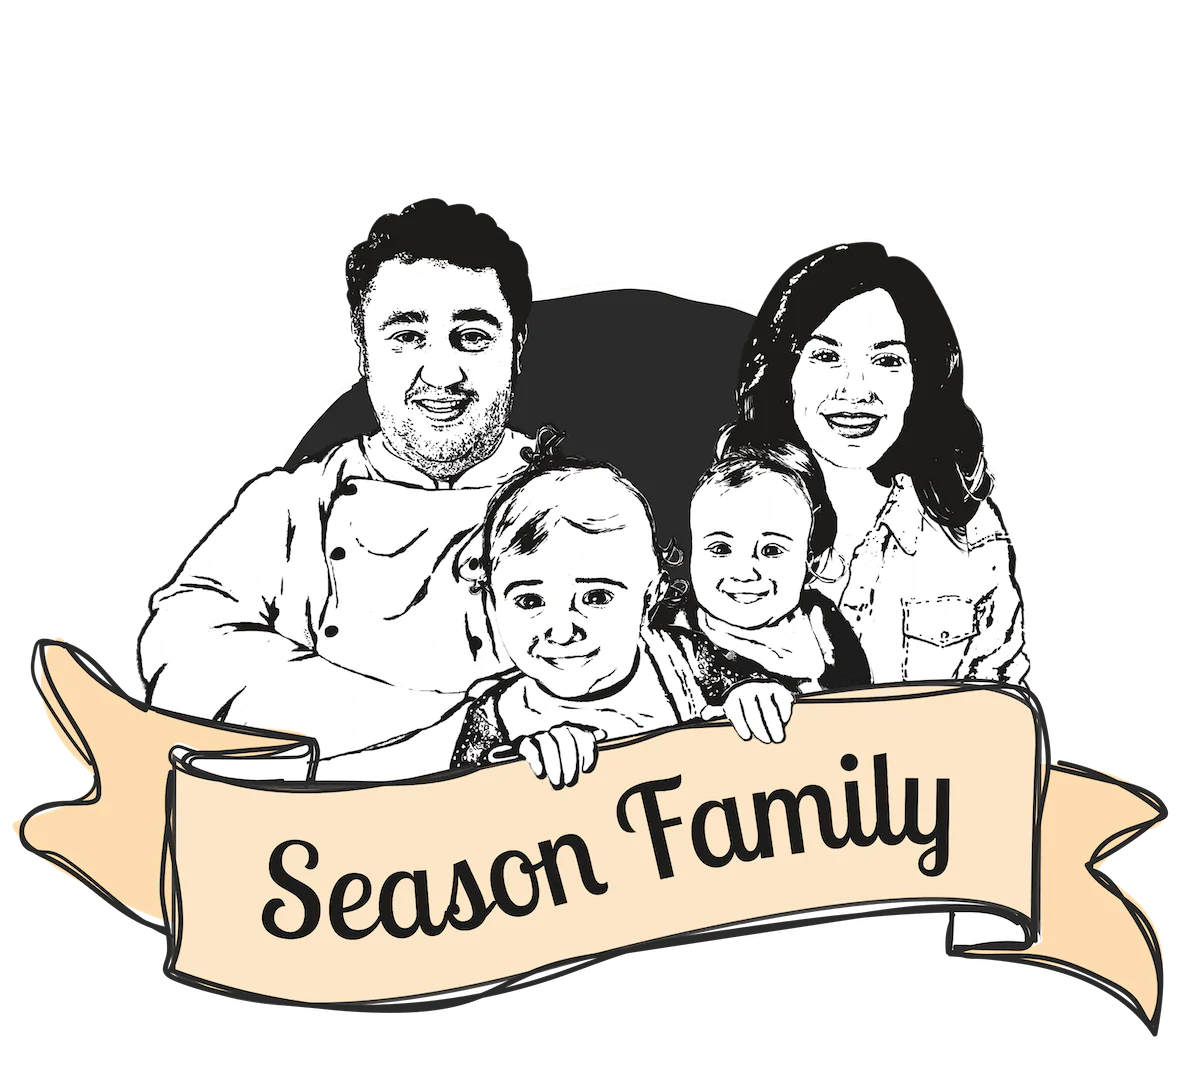 (c) Season-family.de